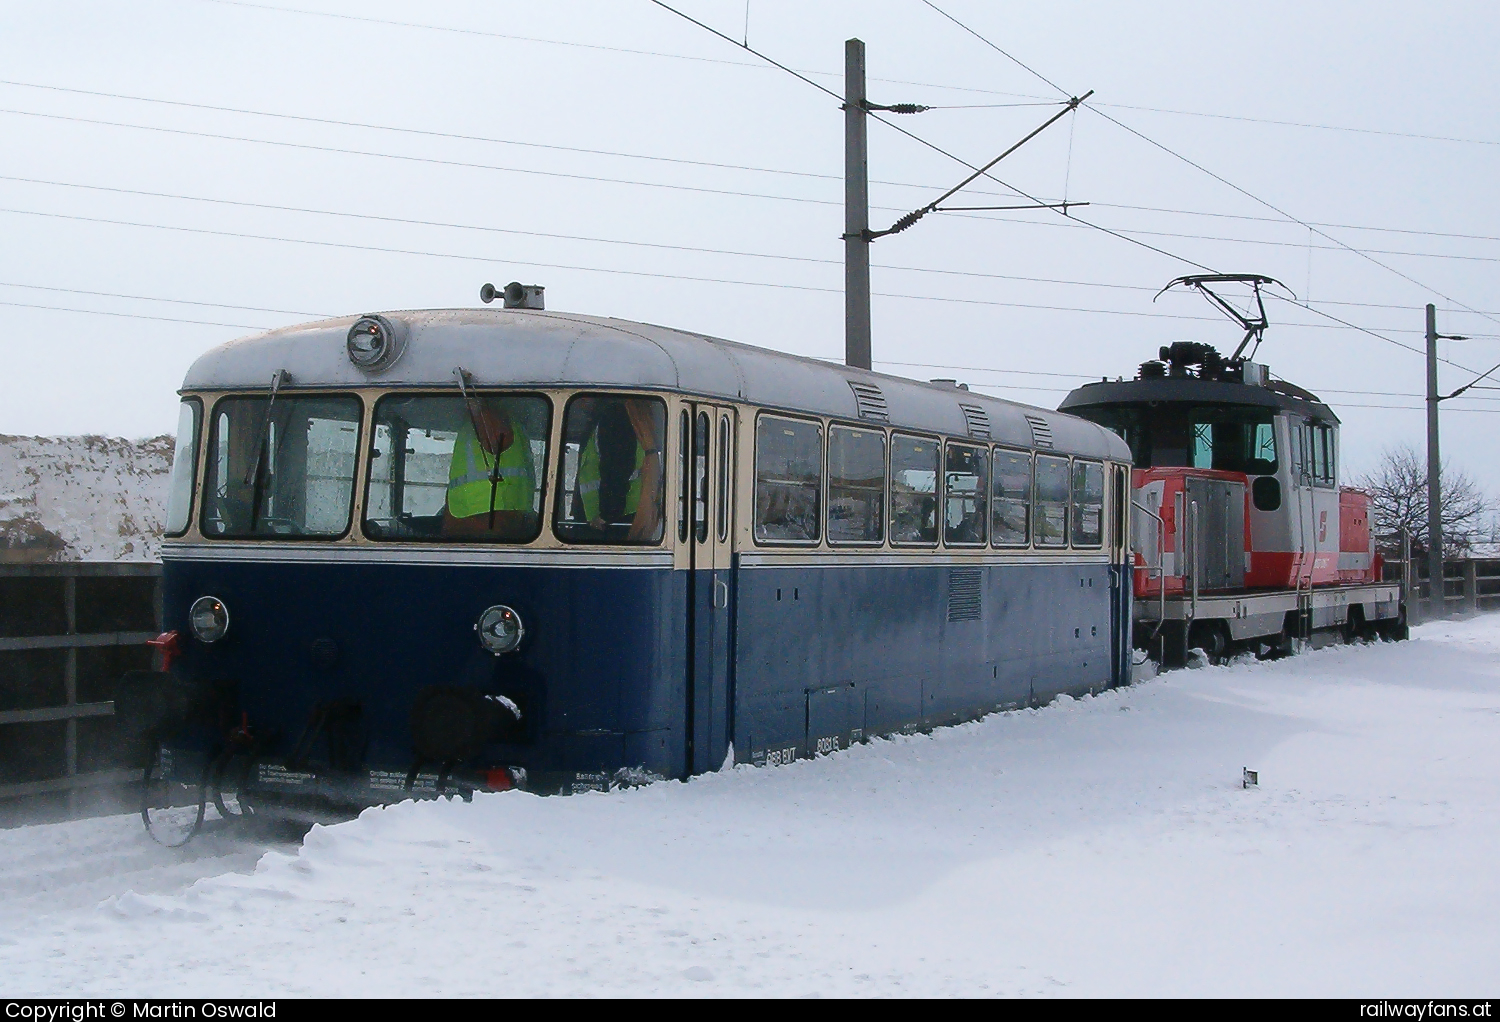 ÖBB 8081 015 in Kledering - Bergung nach Liegenbleiben in Schneewächte durch 1163 016.   Railwayfans